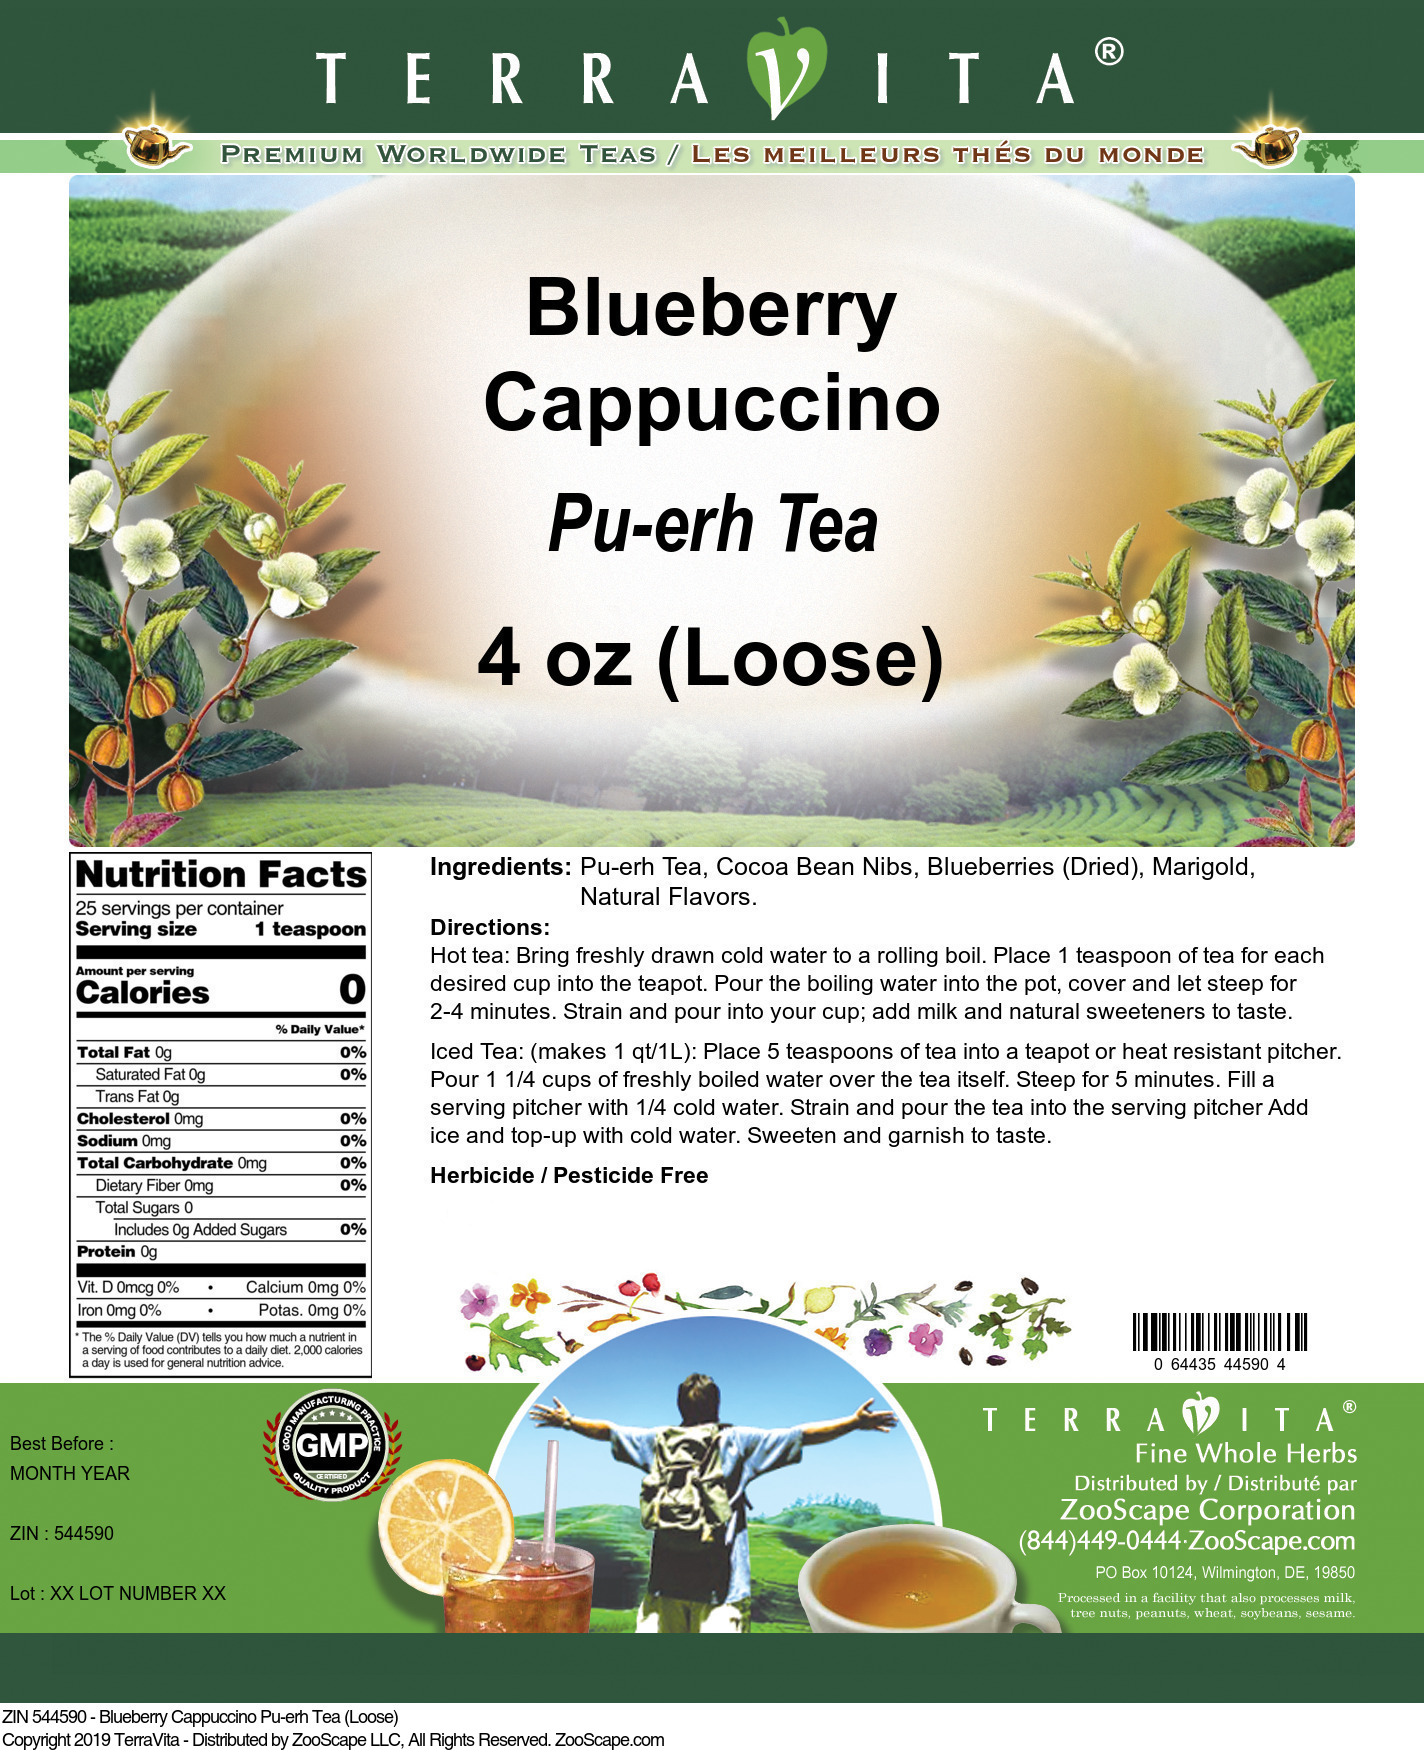 Blueberry Cappuccino Pu-erh Tea (Loose) - Label